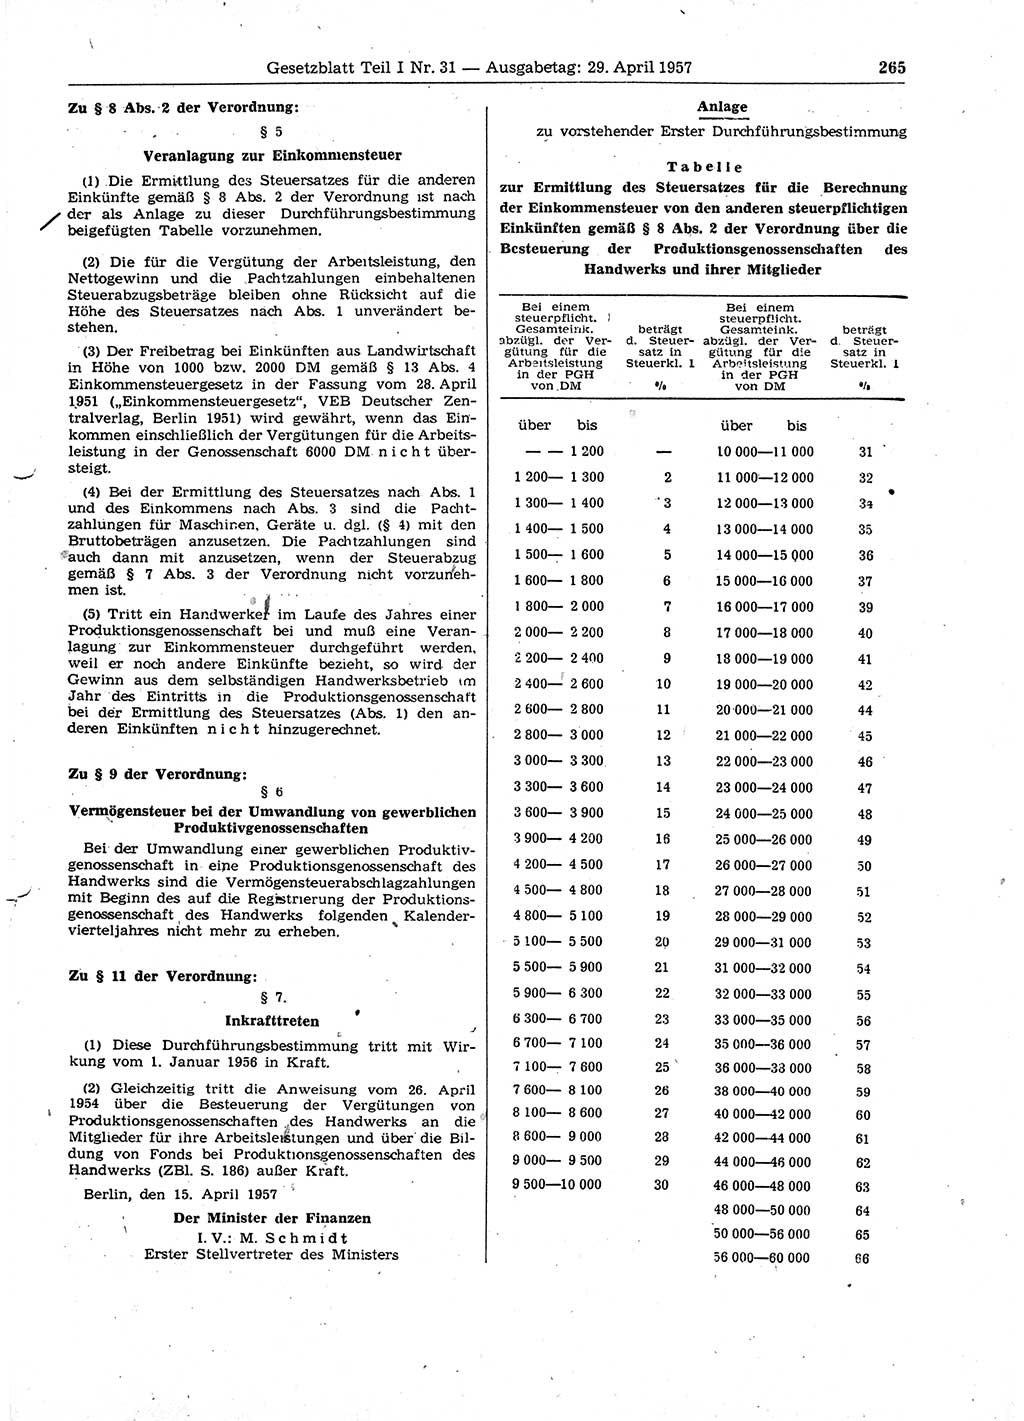 Gesetzblatt (GBl.) der Deutschen Demokratischen Republik (DDR) Teil Ⅰ 1957, Seite 265 (GBl. DDR Ⅰ 1957, S. 265)